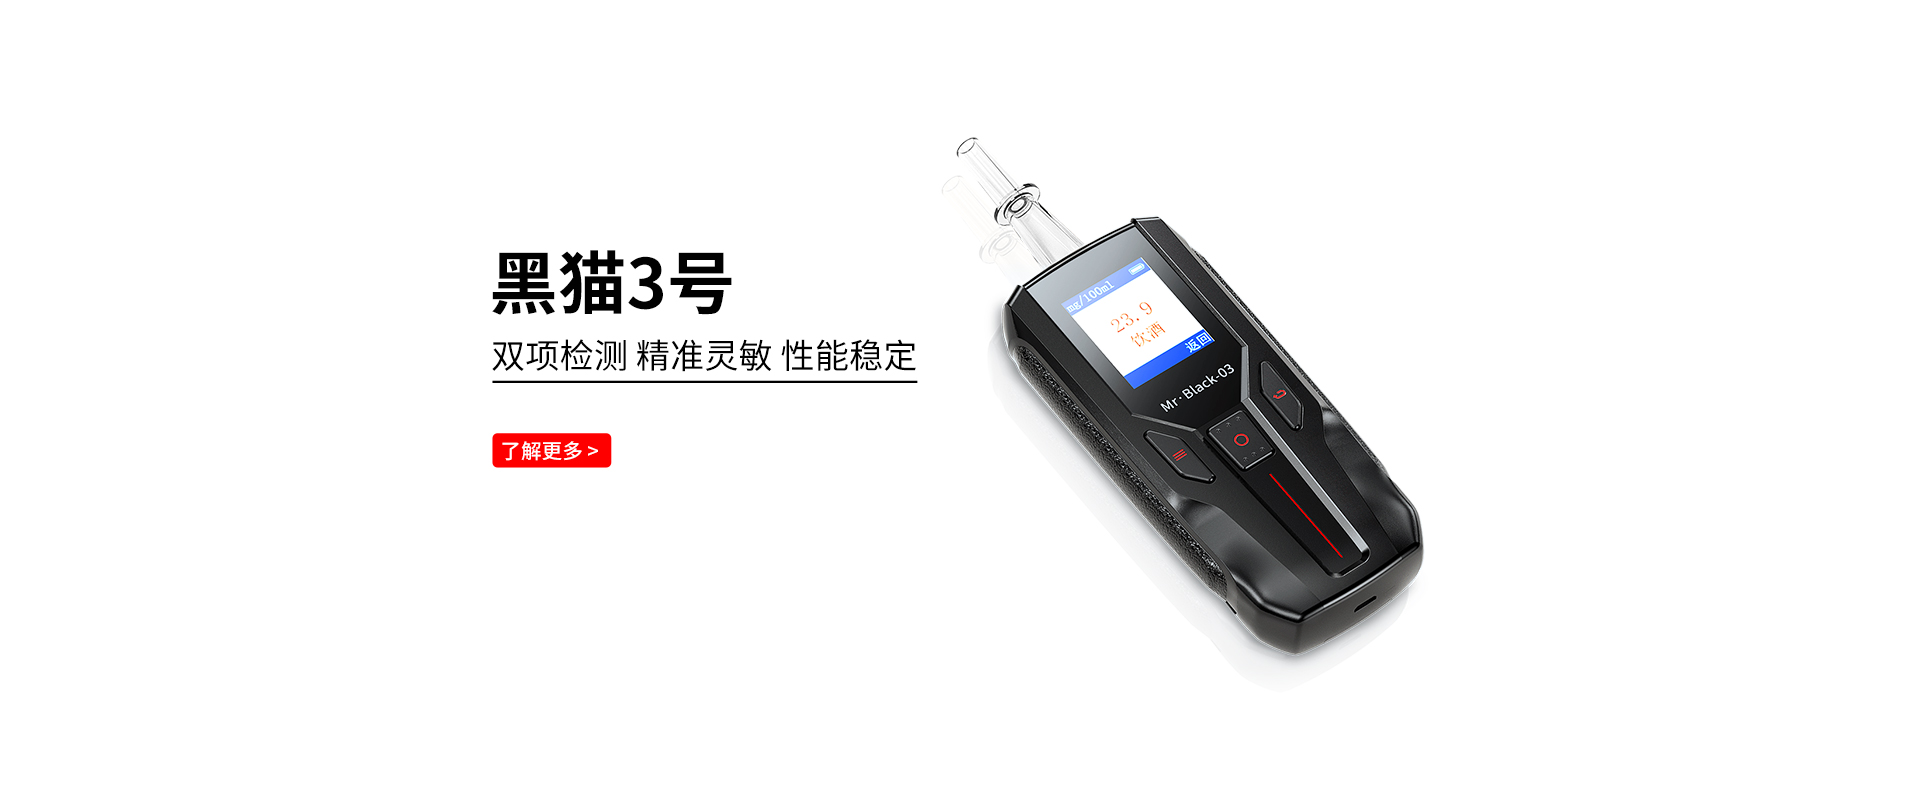 酒精测试仪-酒精检测仪-深圳市兆为科技有限公司